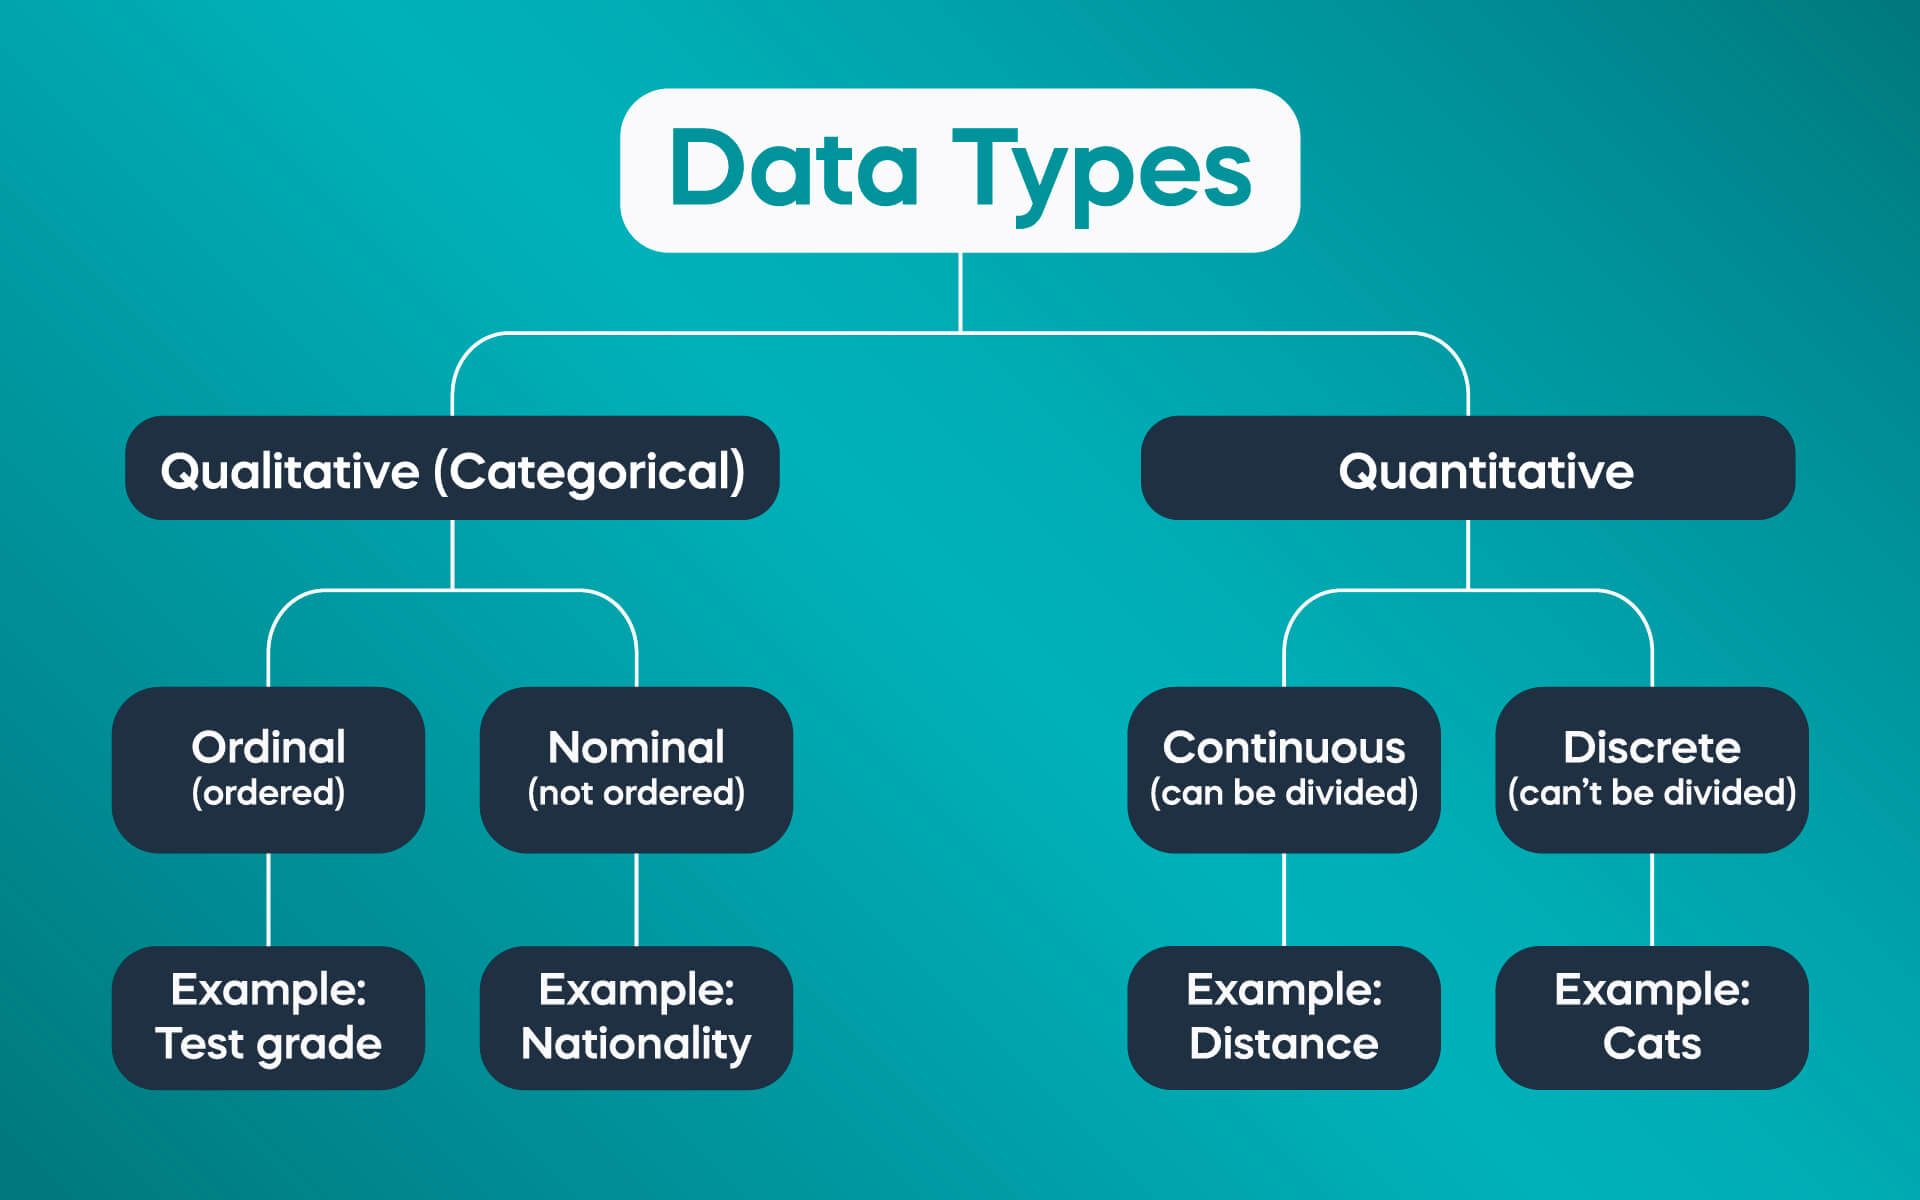 quantitative data science